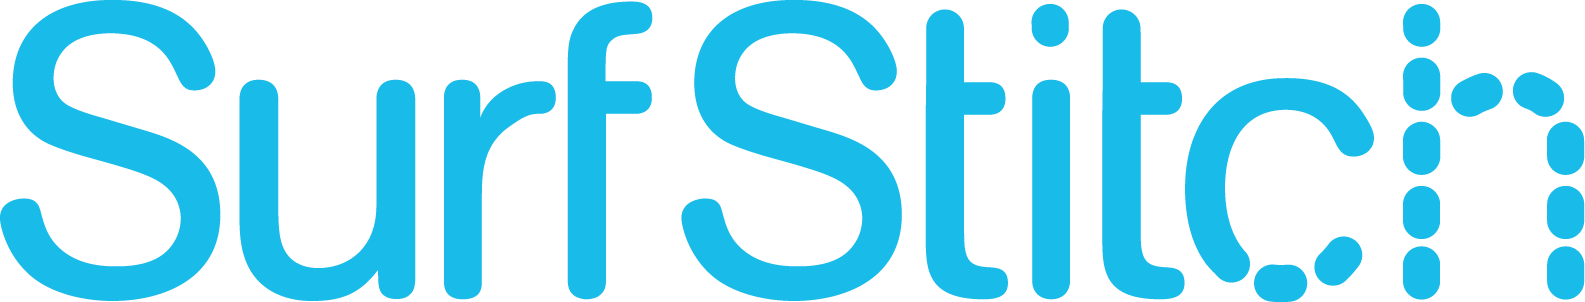 Surfstitch Logo